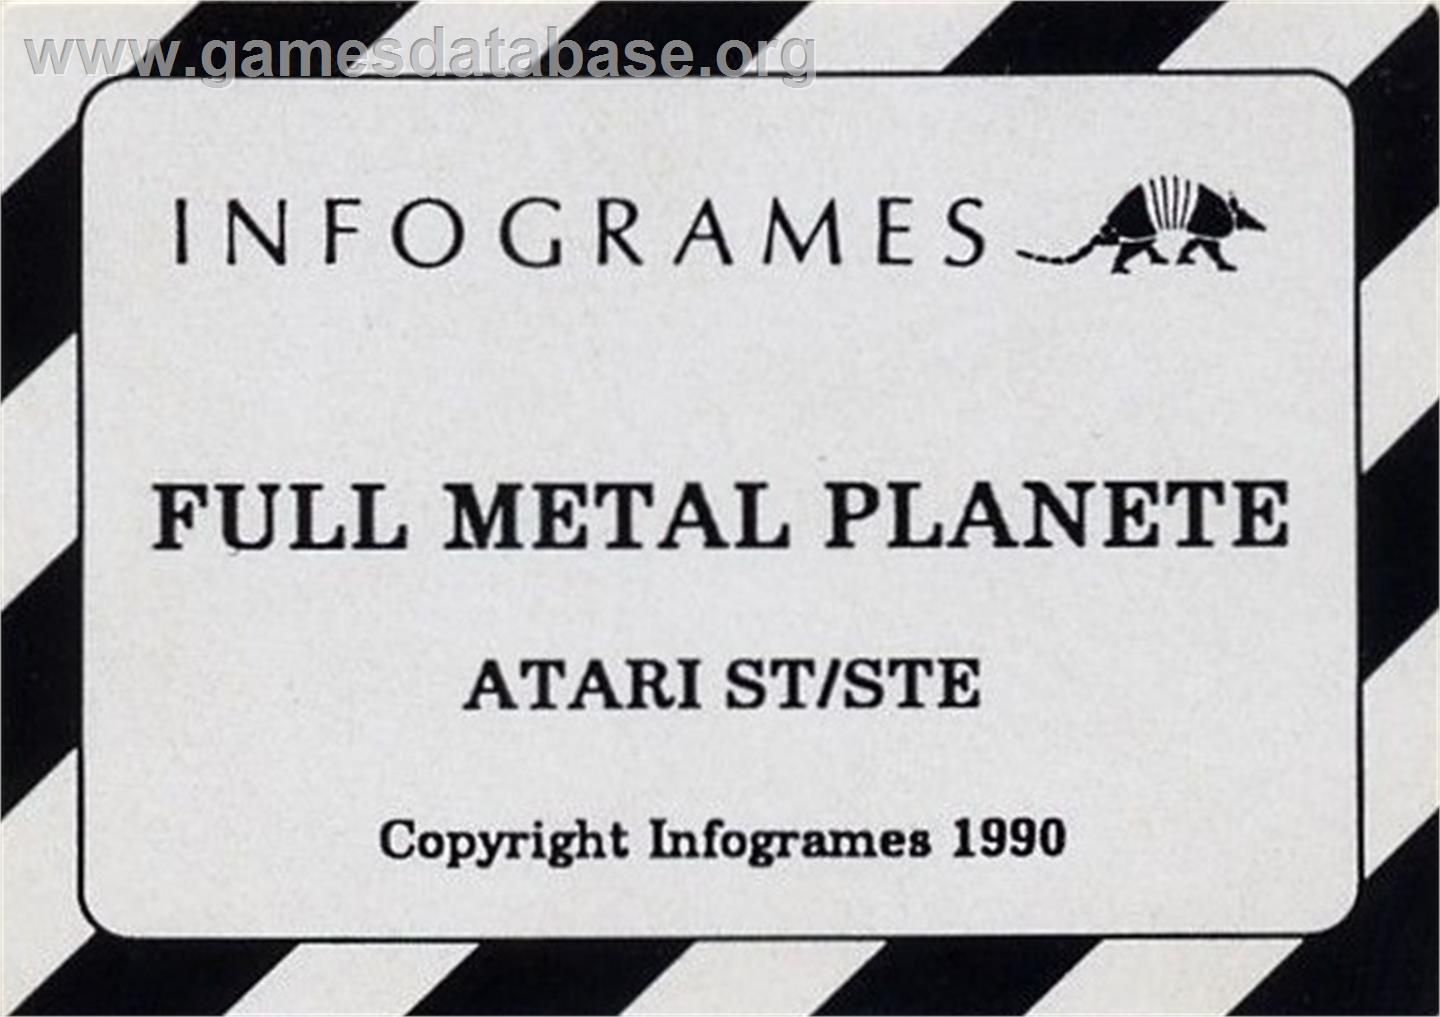 Full Metal Planete - Atari ST - Artwork - Cartridge Top